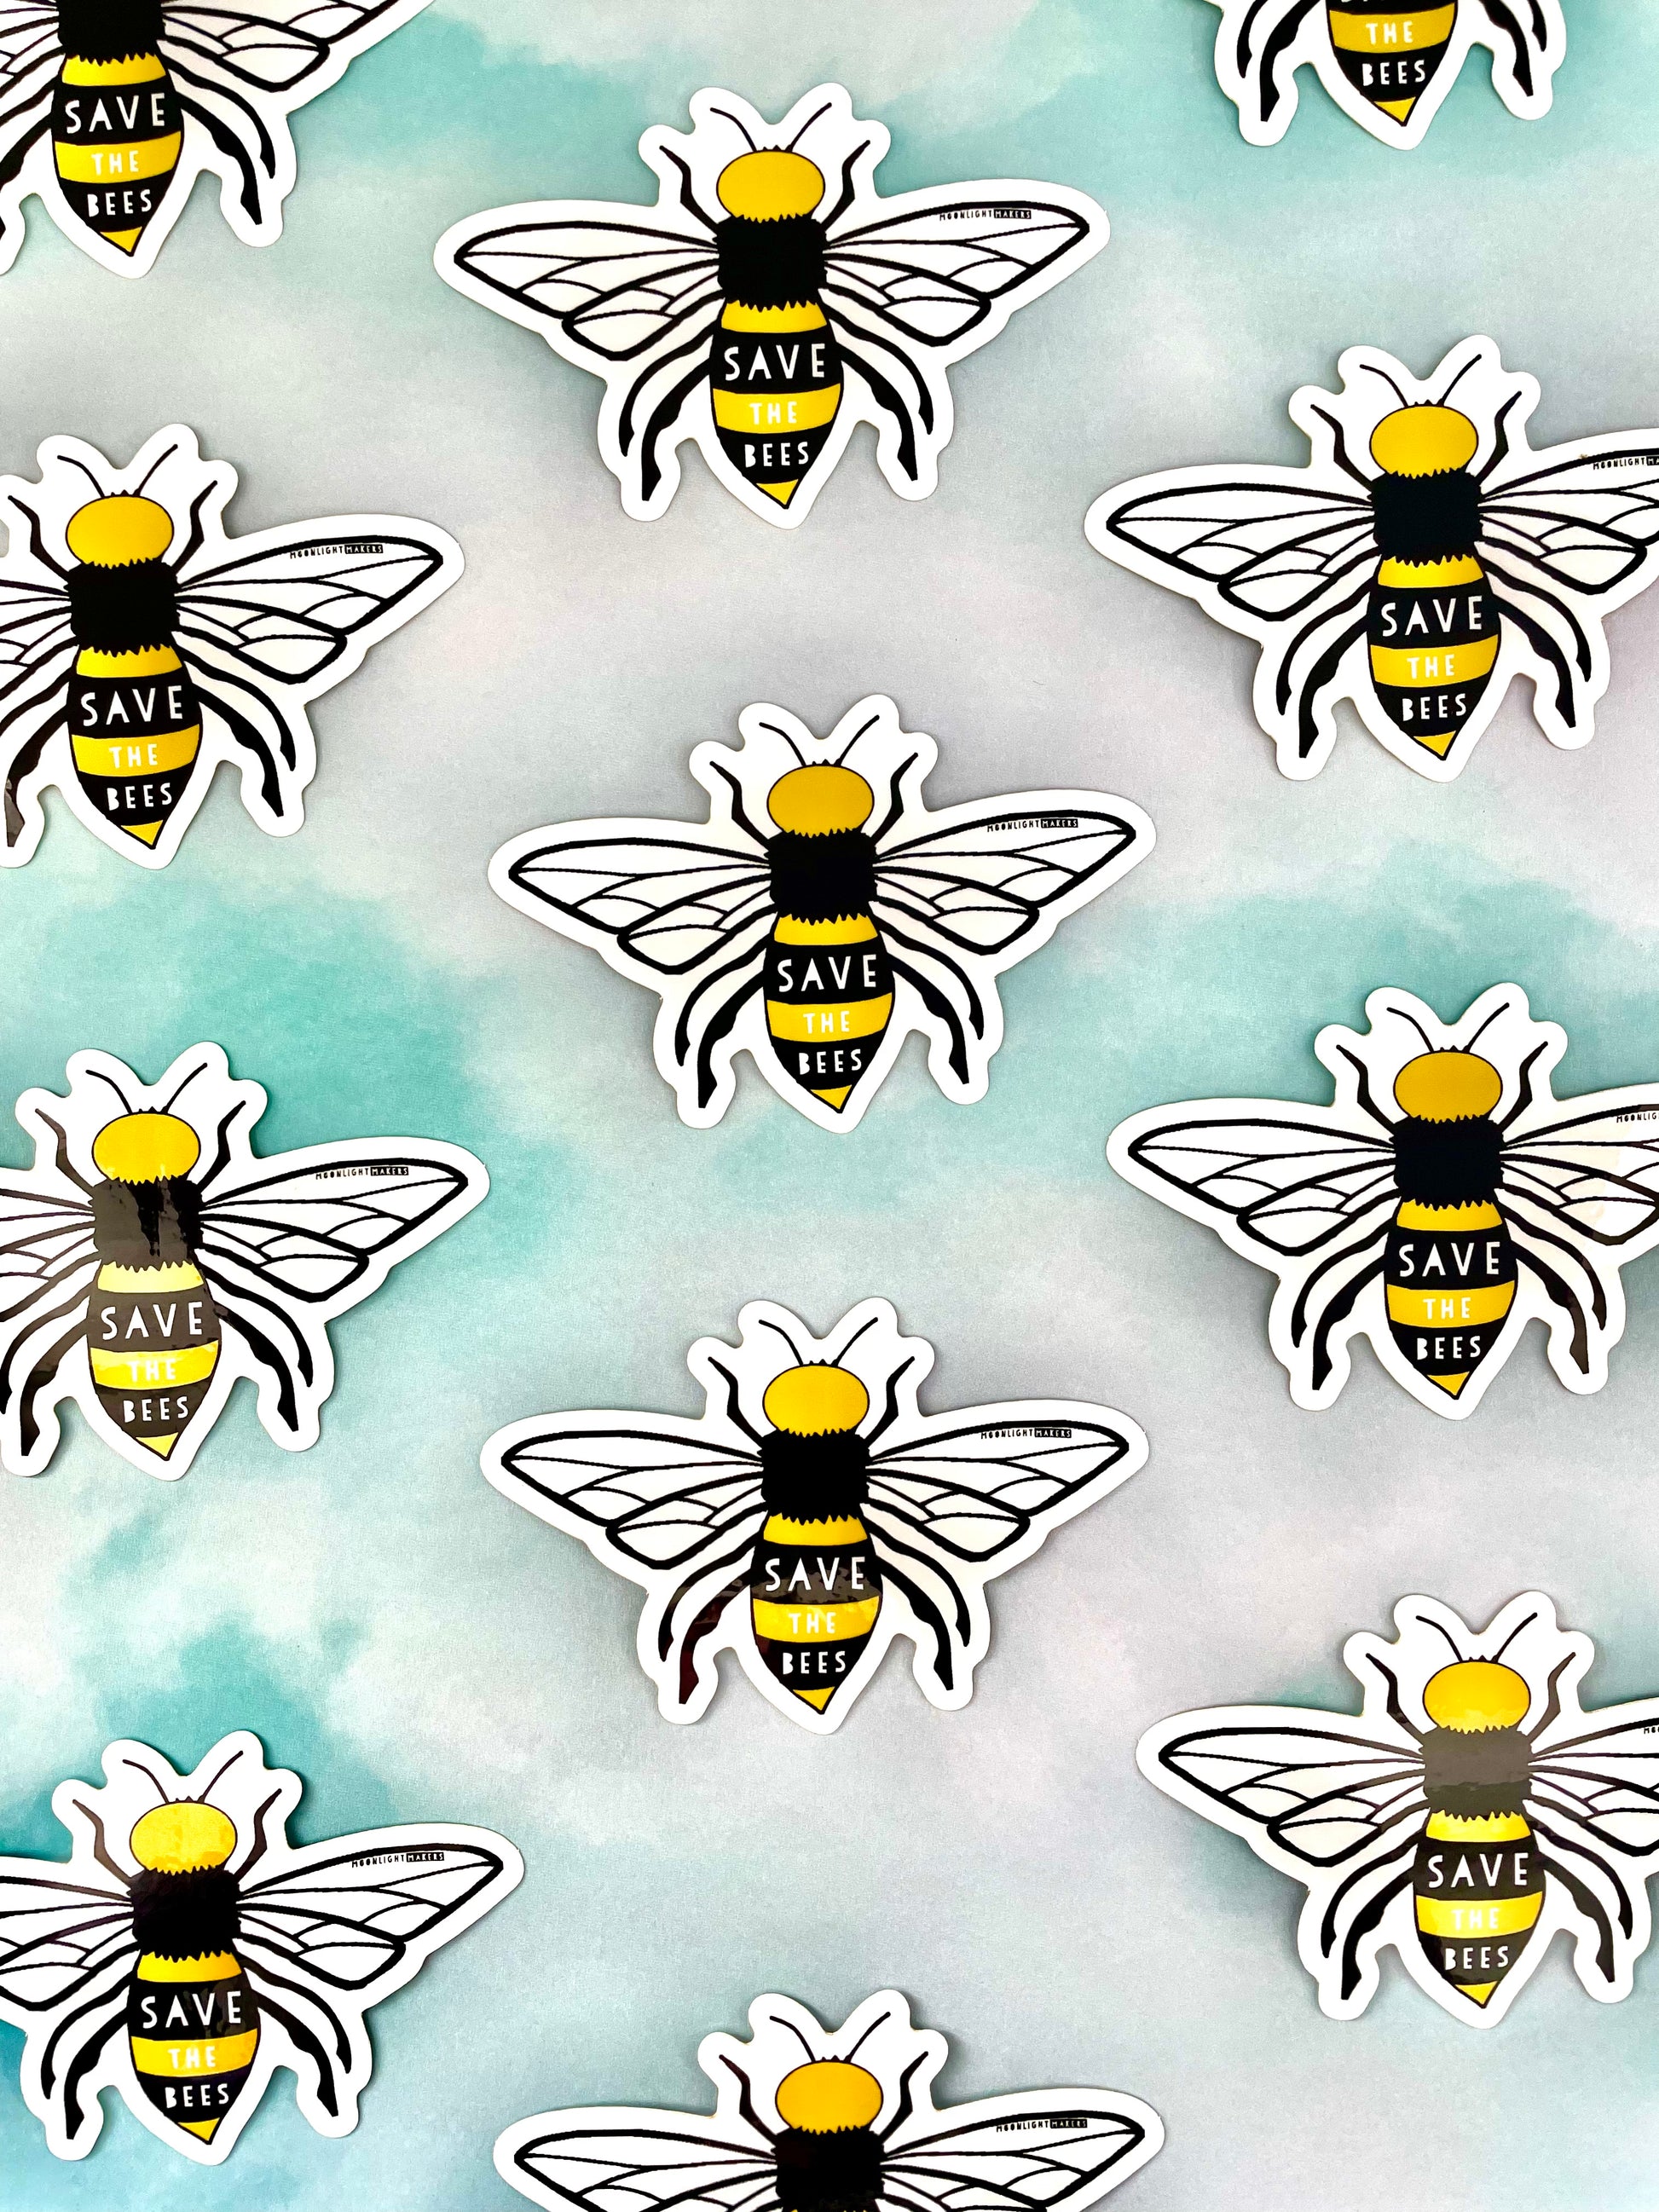 Save The Bees - Die Cut Sticker - MoonlightMakers